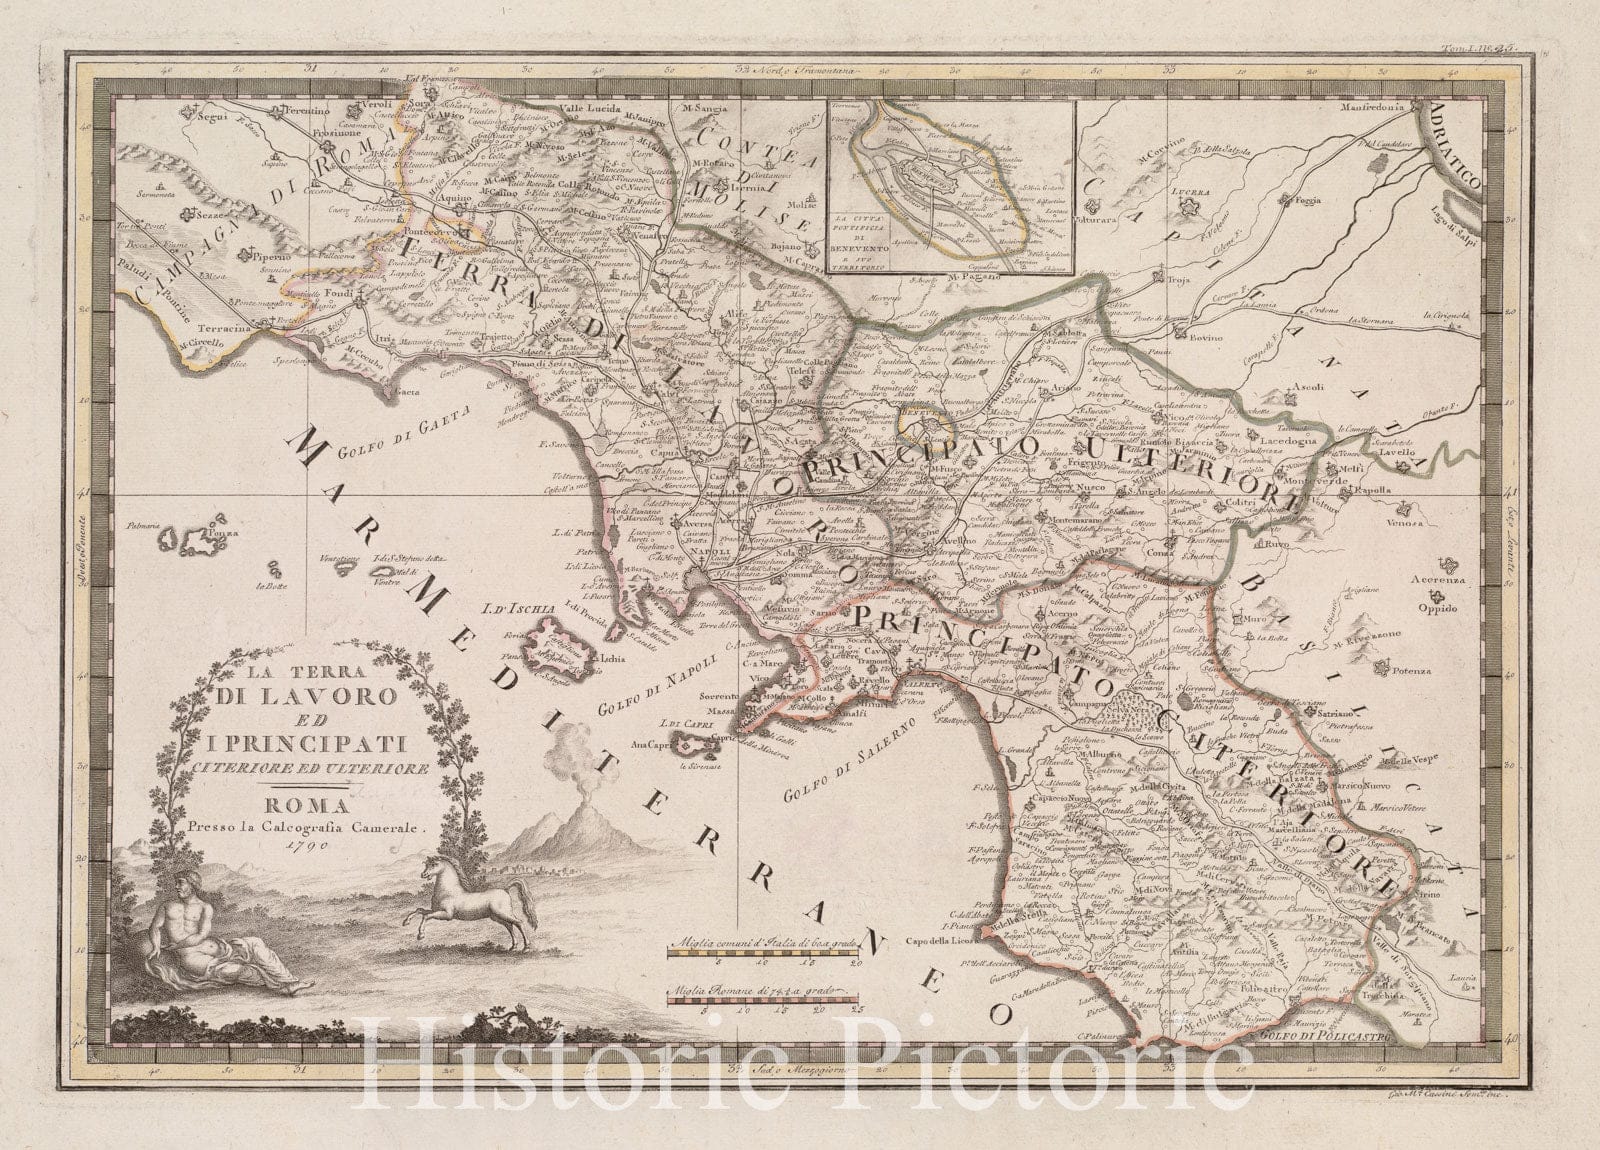 Historical Map, 1792 La Terra di Lavoro ed I principati citeriore ulteriore, Vintage Wall Art